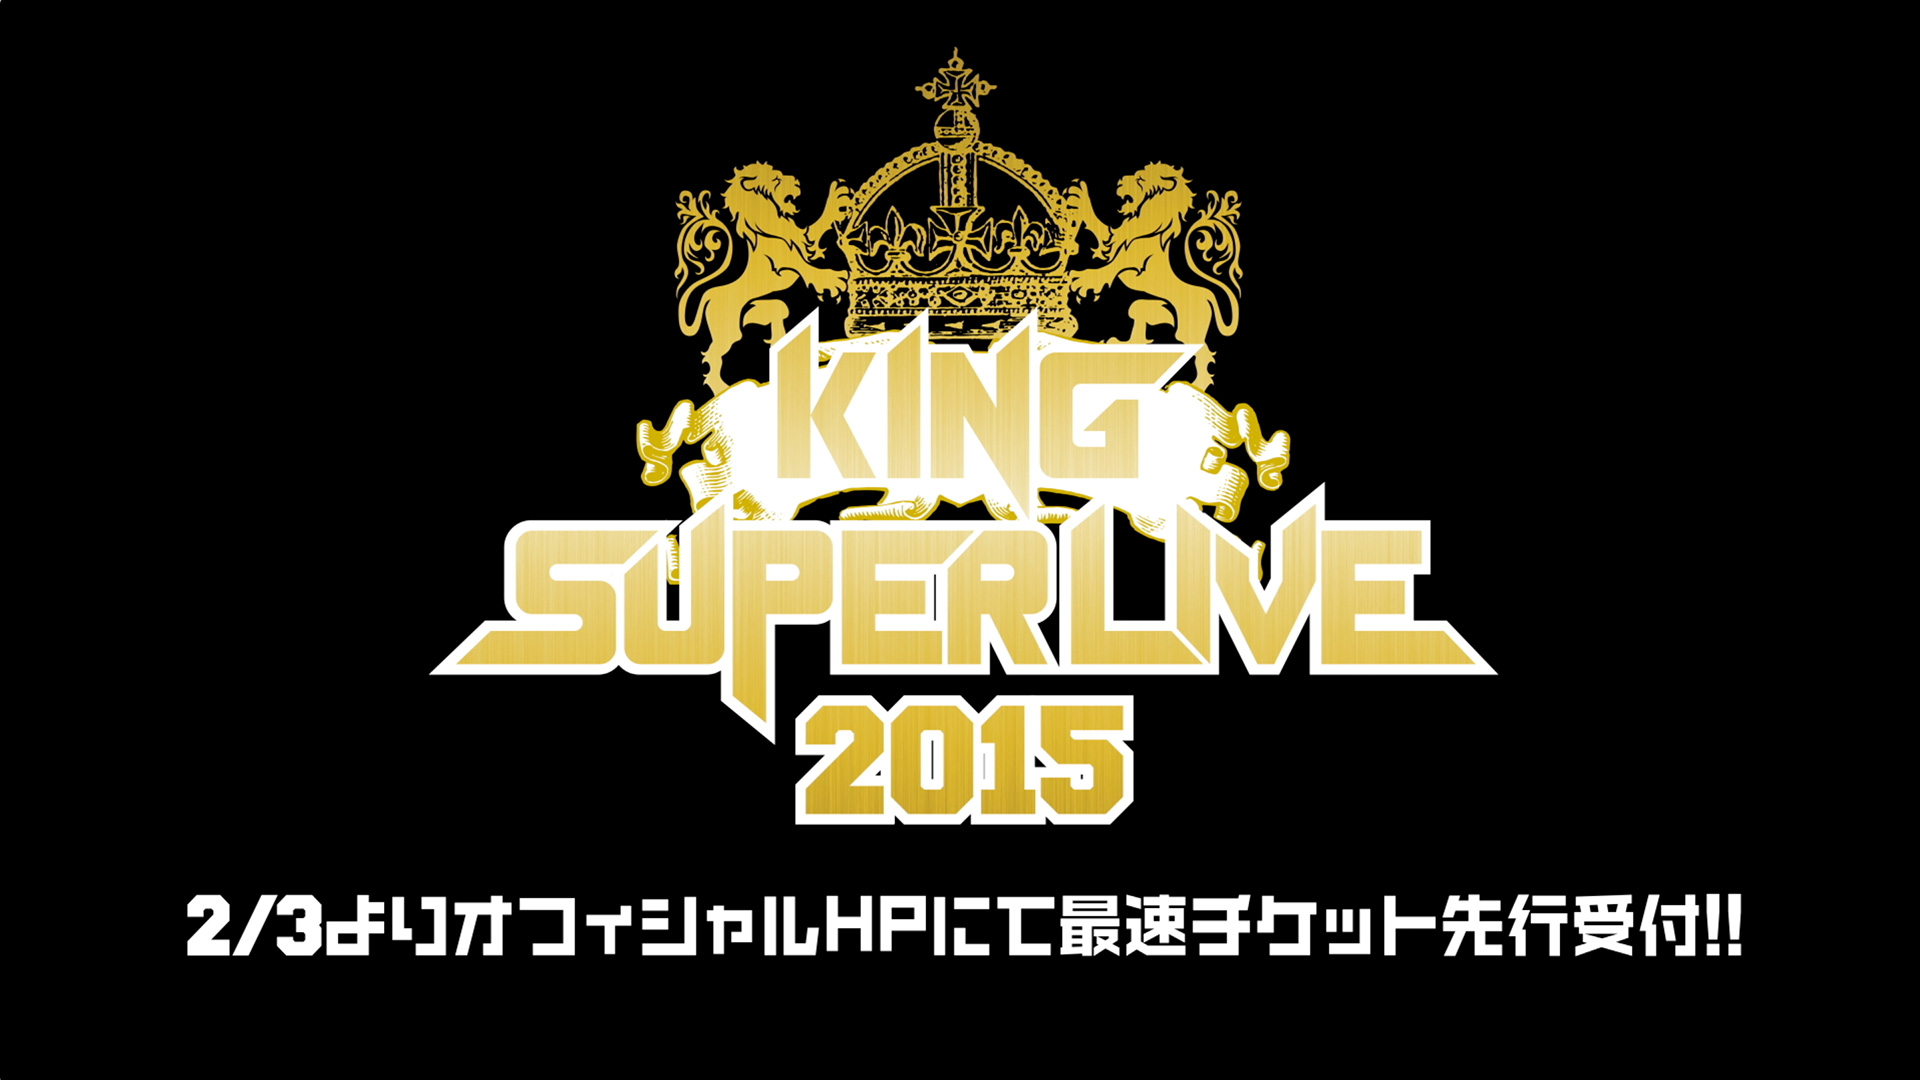 King Super Live 2015